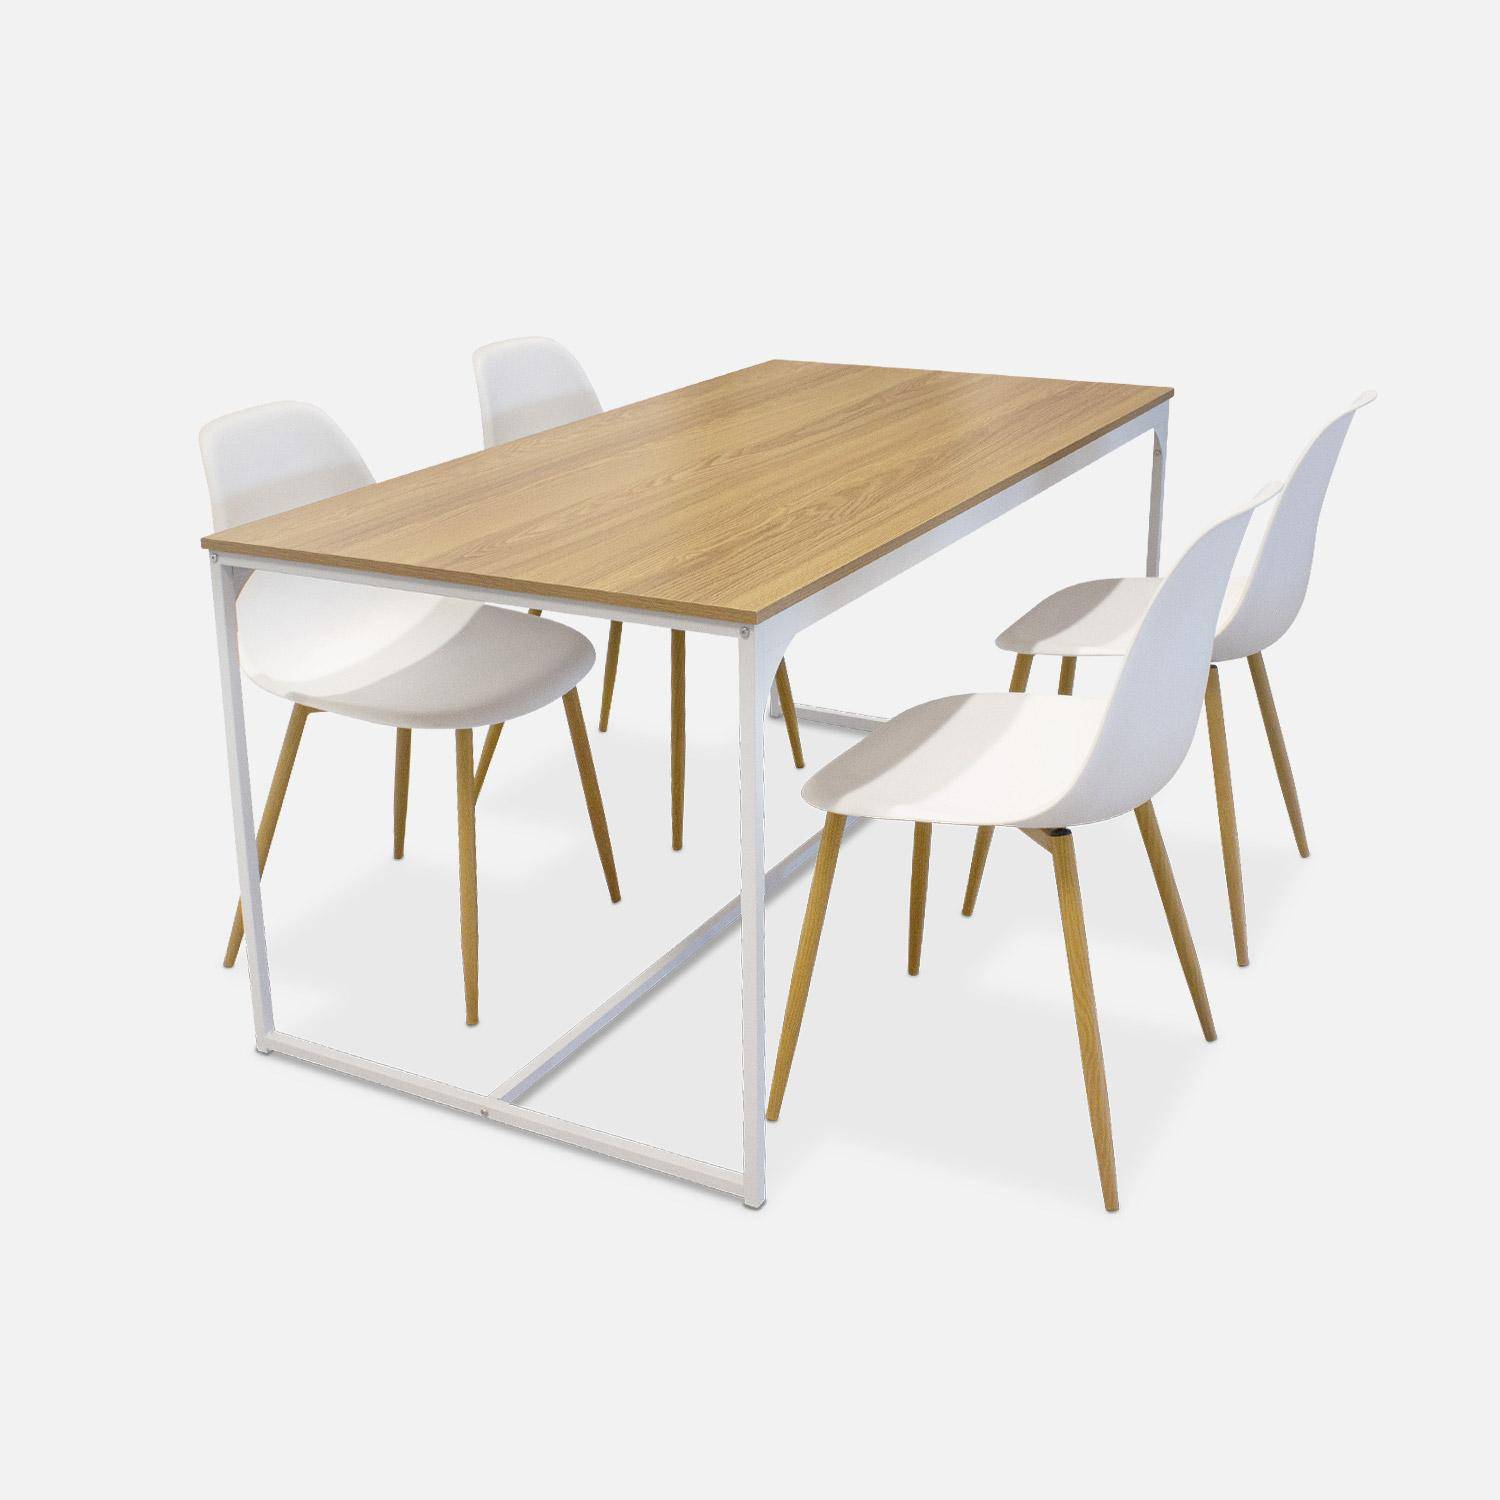 Rechthoekige eettafel wit metaal 150cm + 4 eetkamerstoelen stoelen, houtkleurige metalen poten, witte zitting Photo5